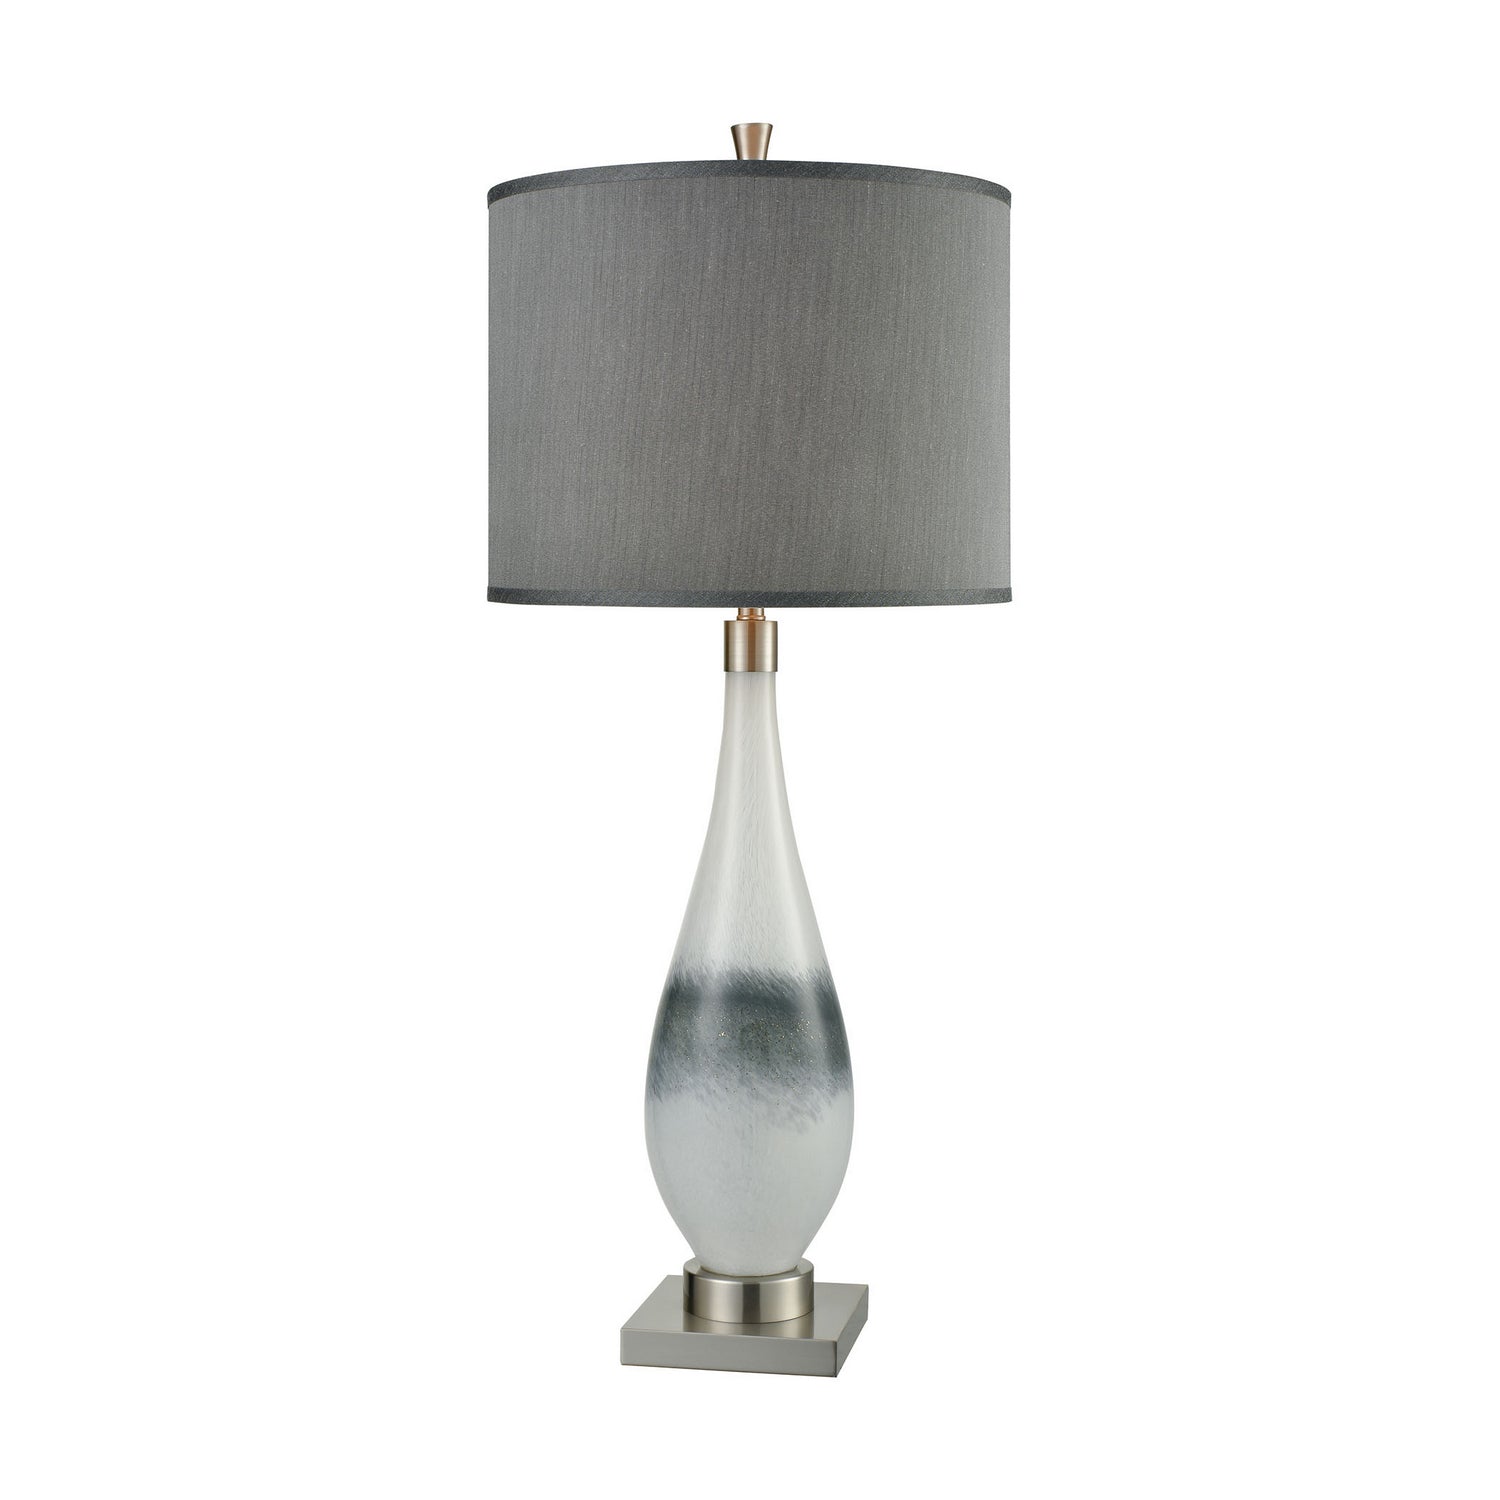 ELK Home - D3516 - One Light Table Lamp - Vapor - White